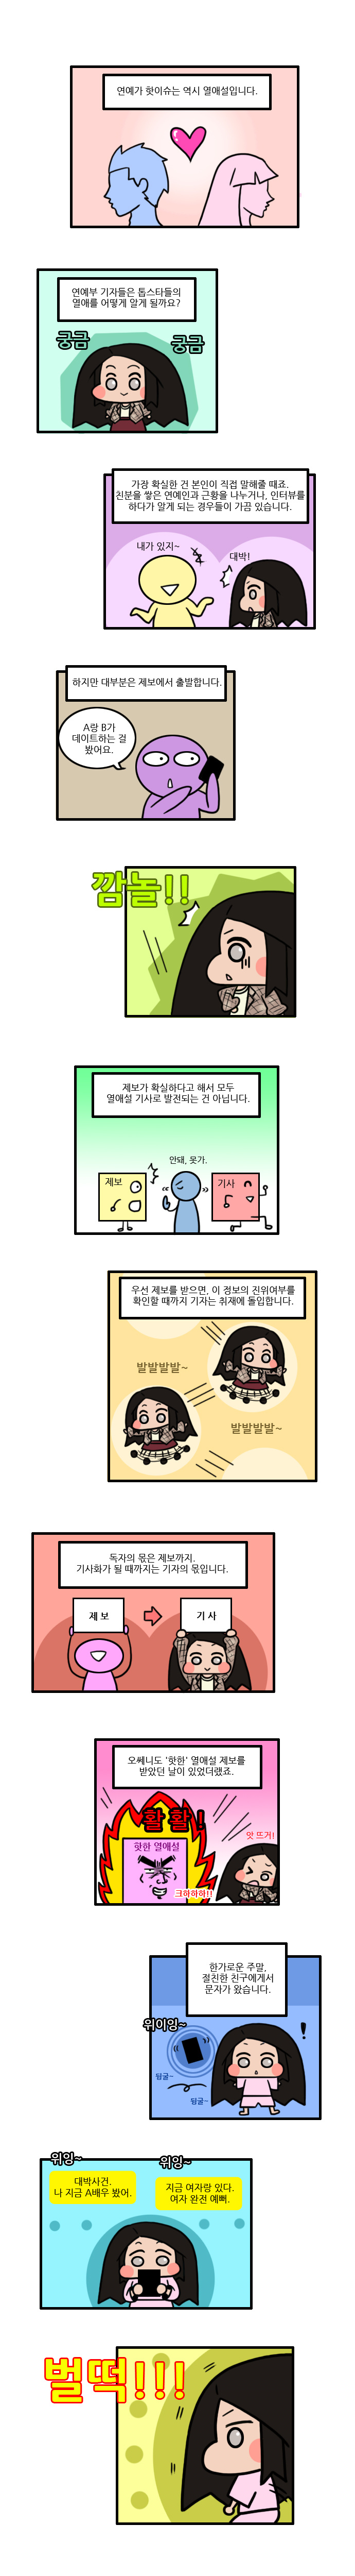 [스타툰]16화. 열애설 취재는.. 쉿!